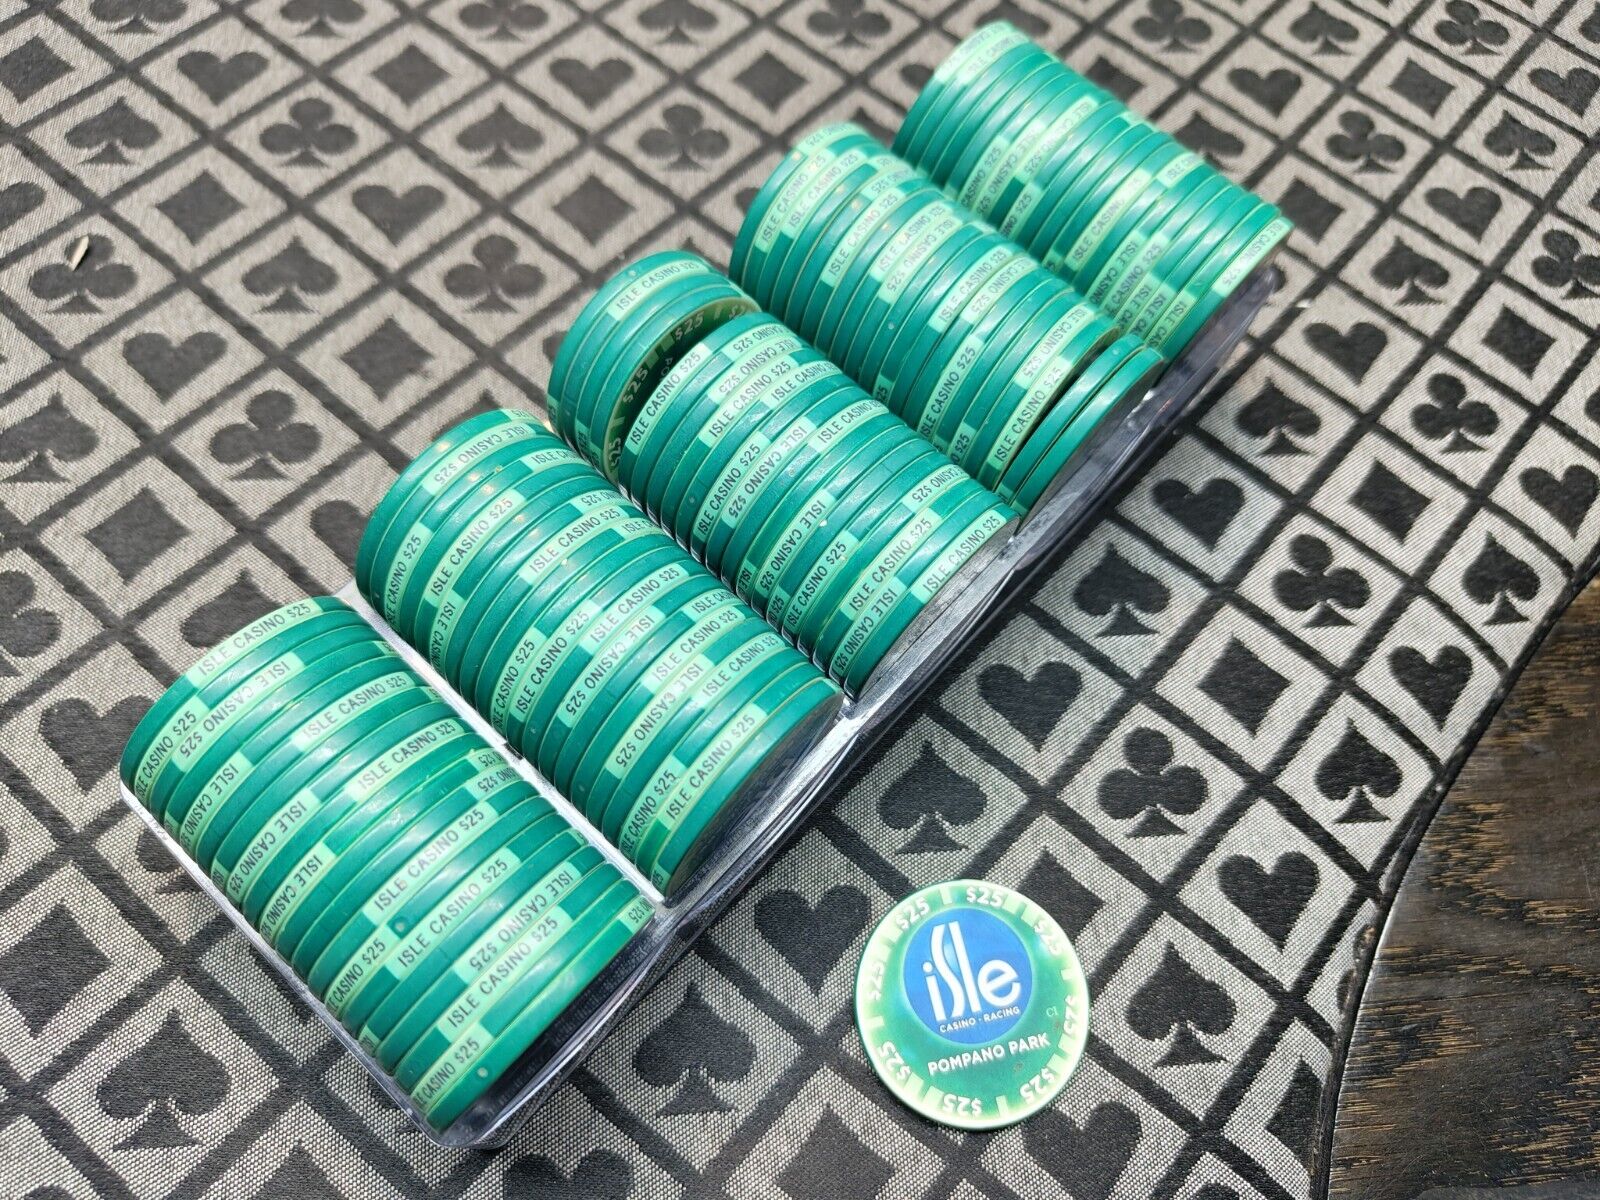 Isle Casino Chipco Rack Of 25s - 100 Chips